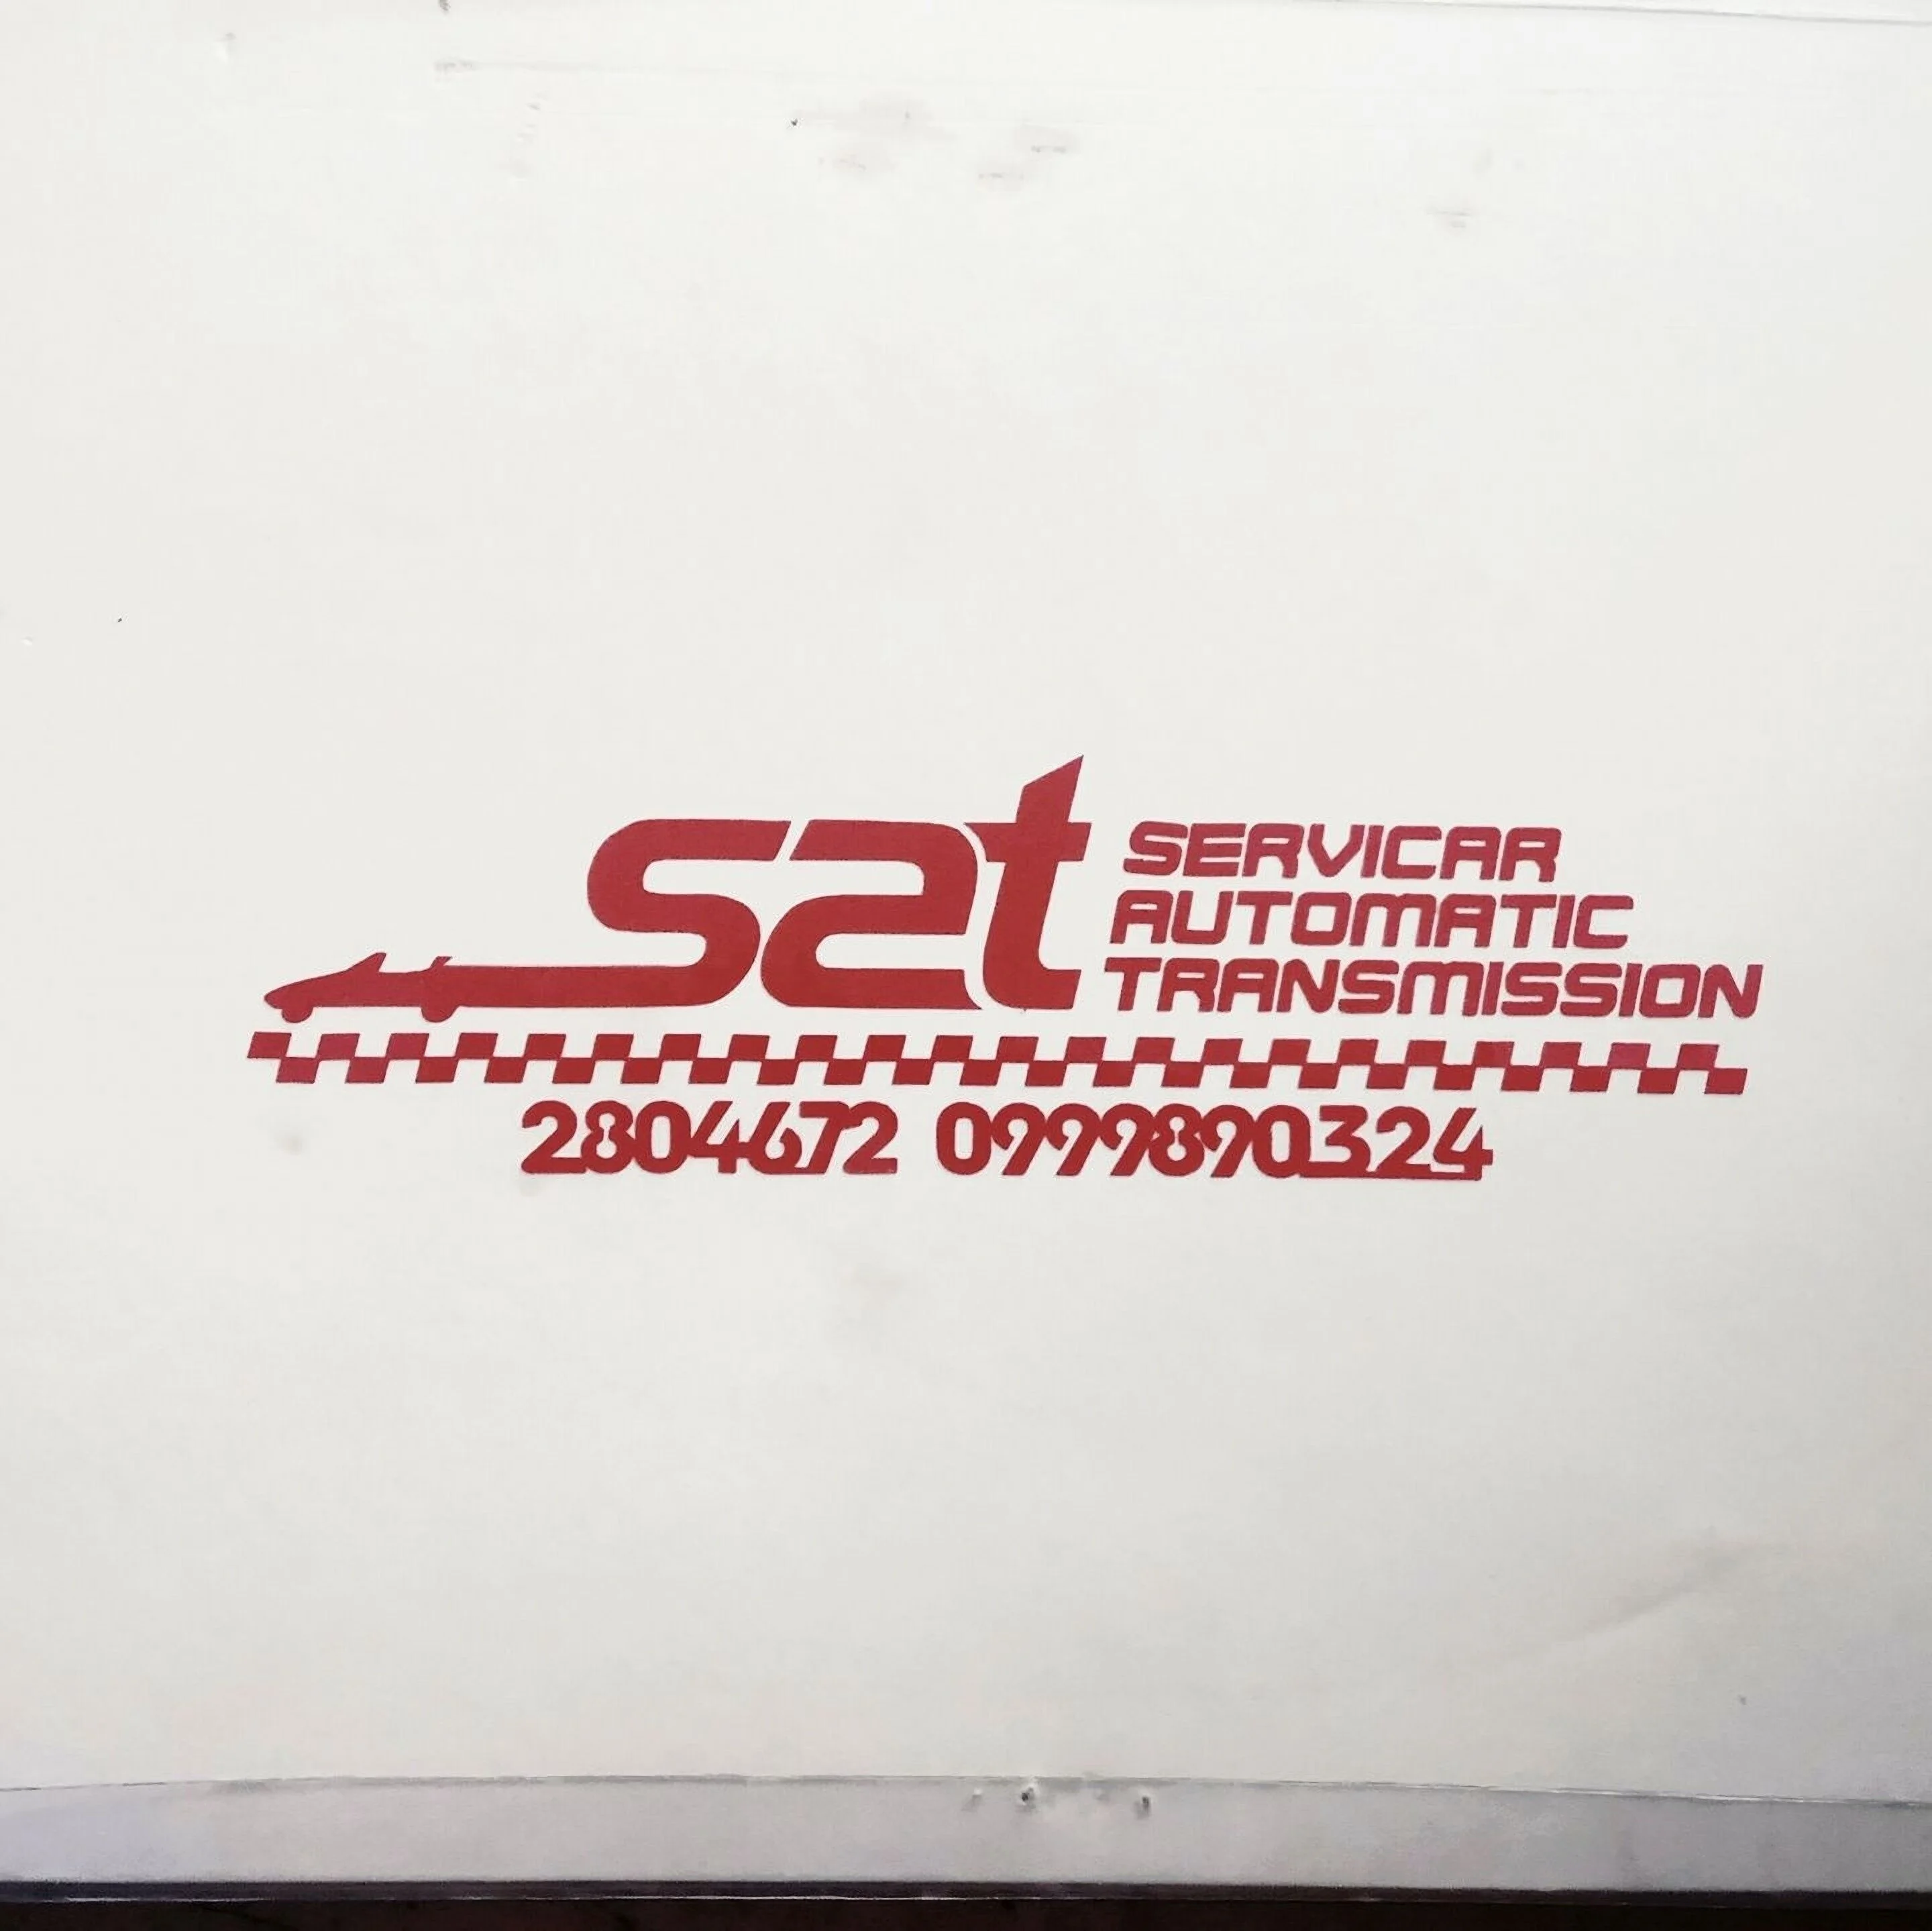 mantenimiento mecanico-sat-servicar-automatic-transmission-14104